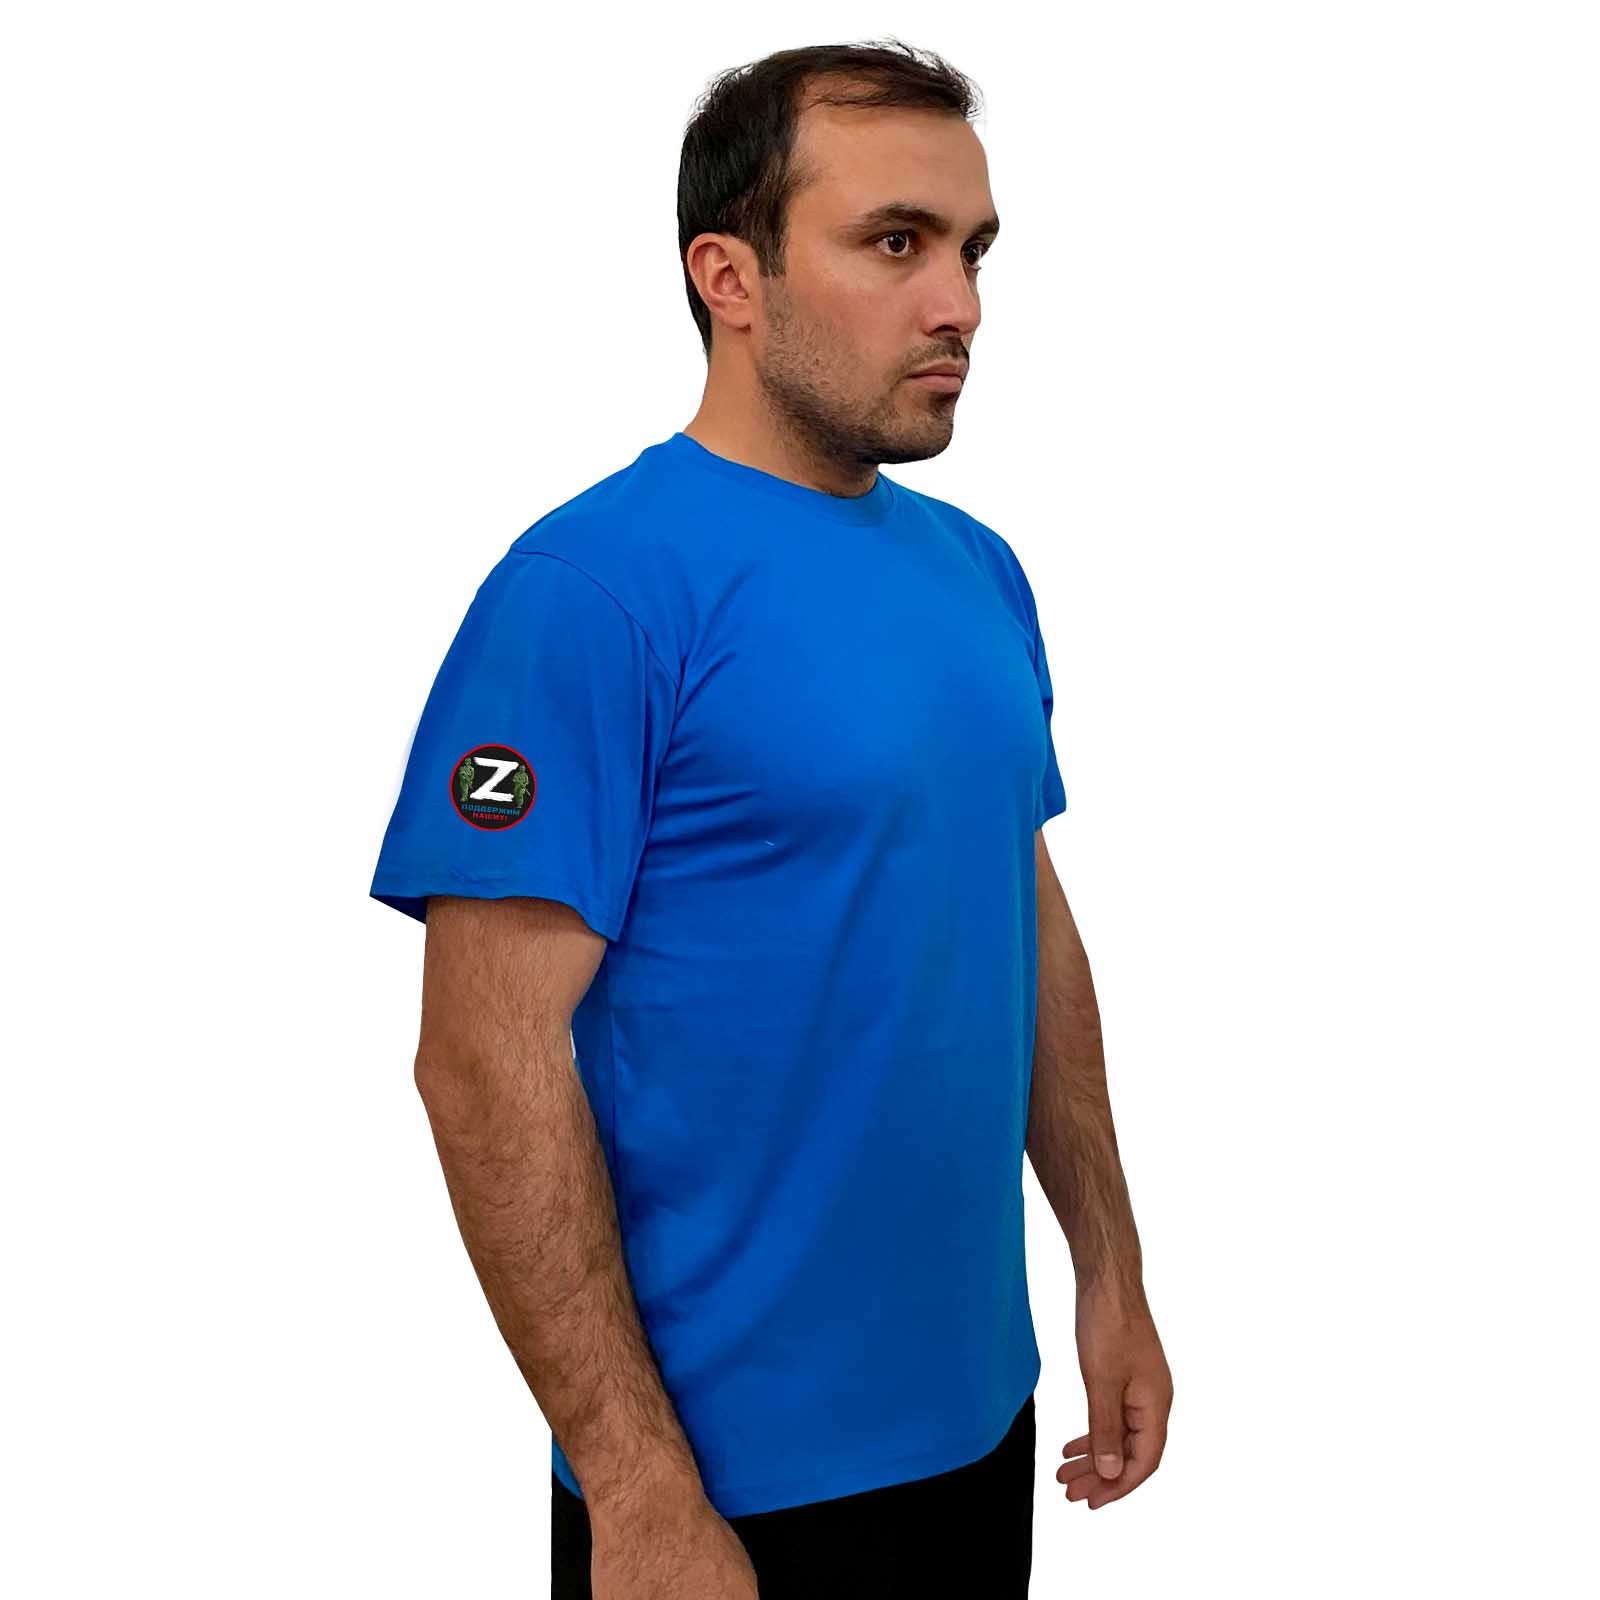 Купить трикотажную голубую футболку с литерой Z онлайн